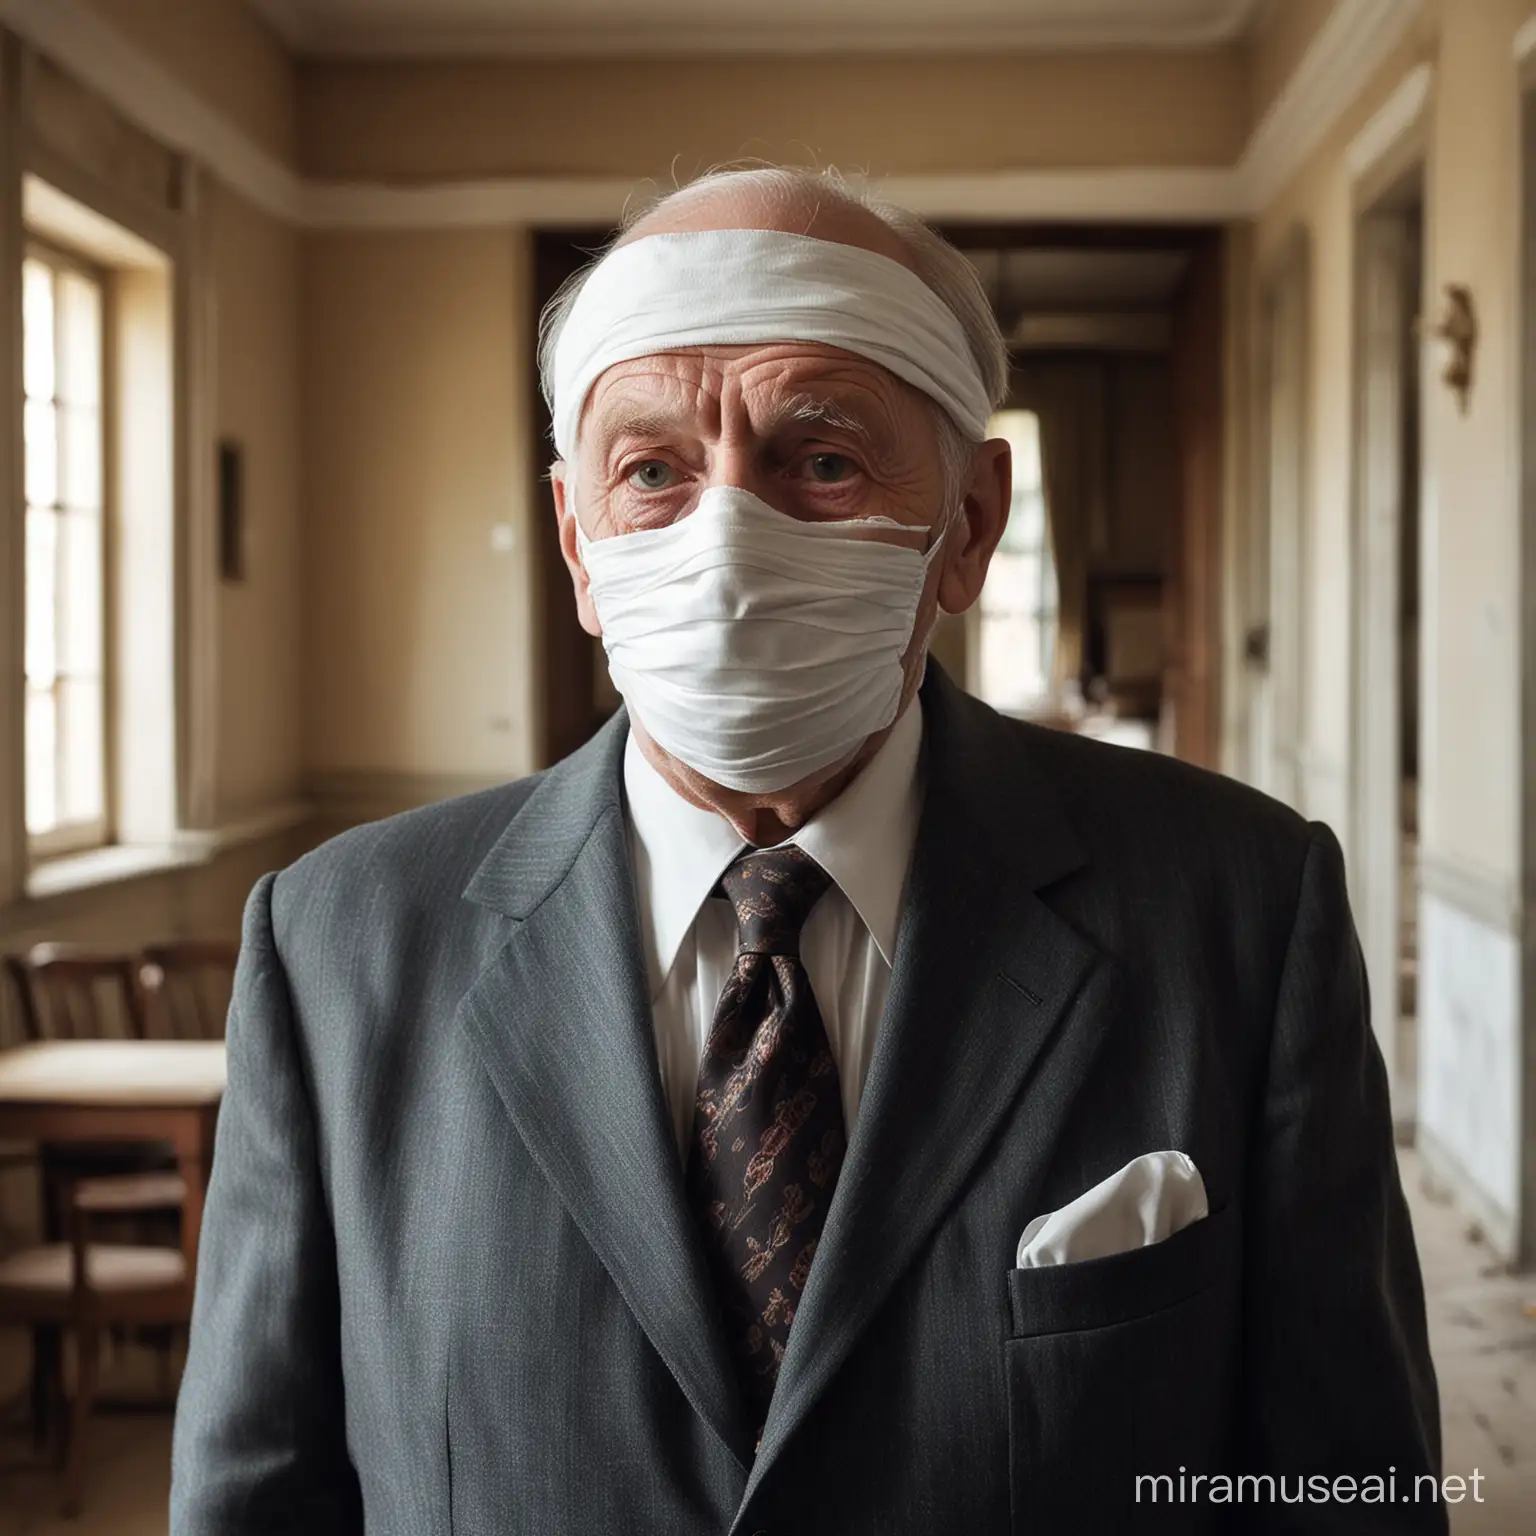 Anciano con su cara totalmente vendada, incluso sus ojos, vestido con traje, en una habitación de una casona antigua, 